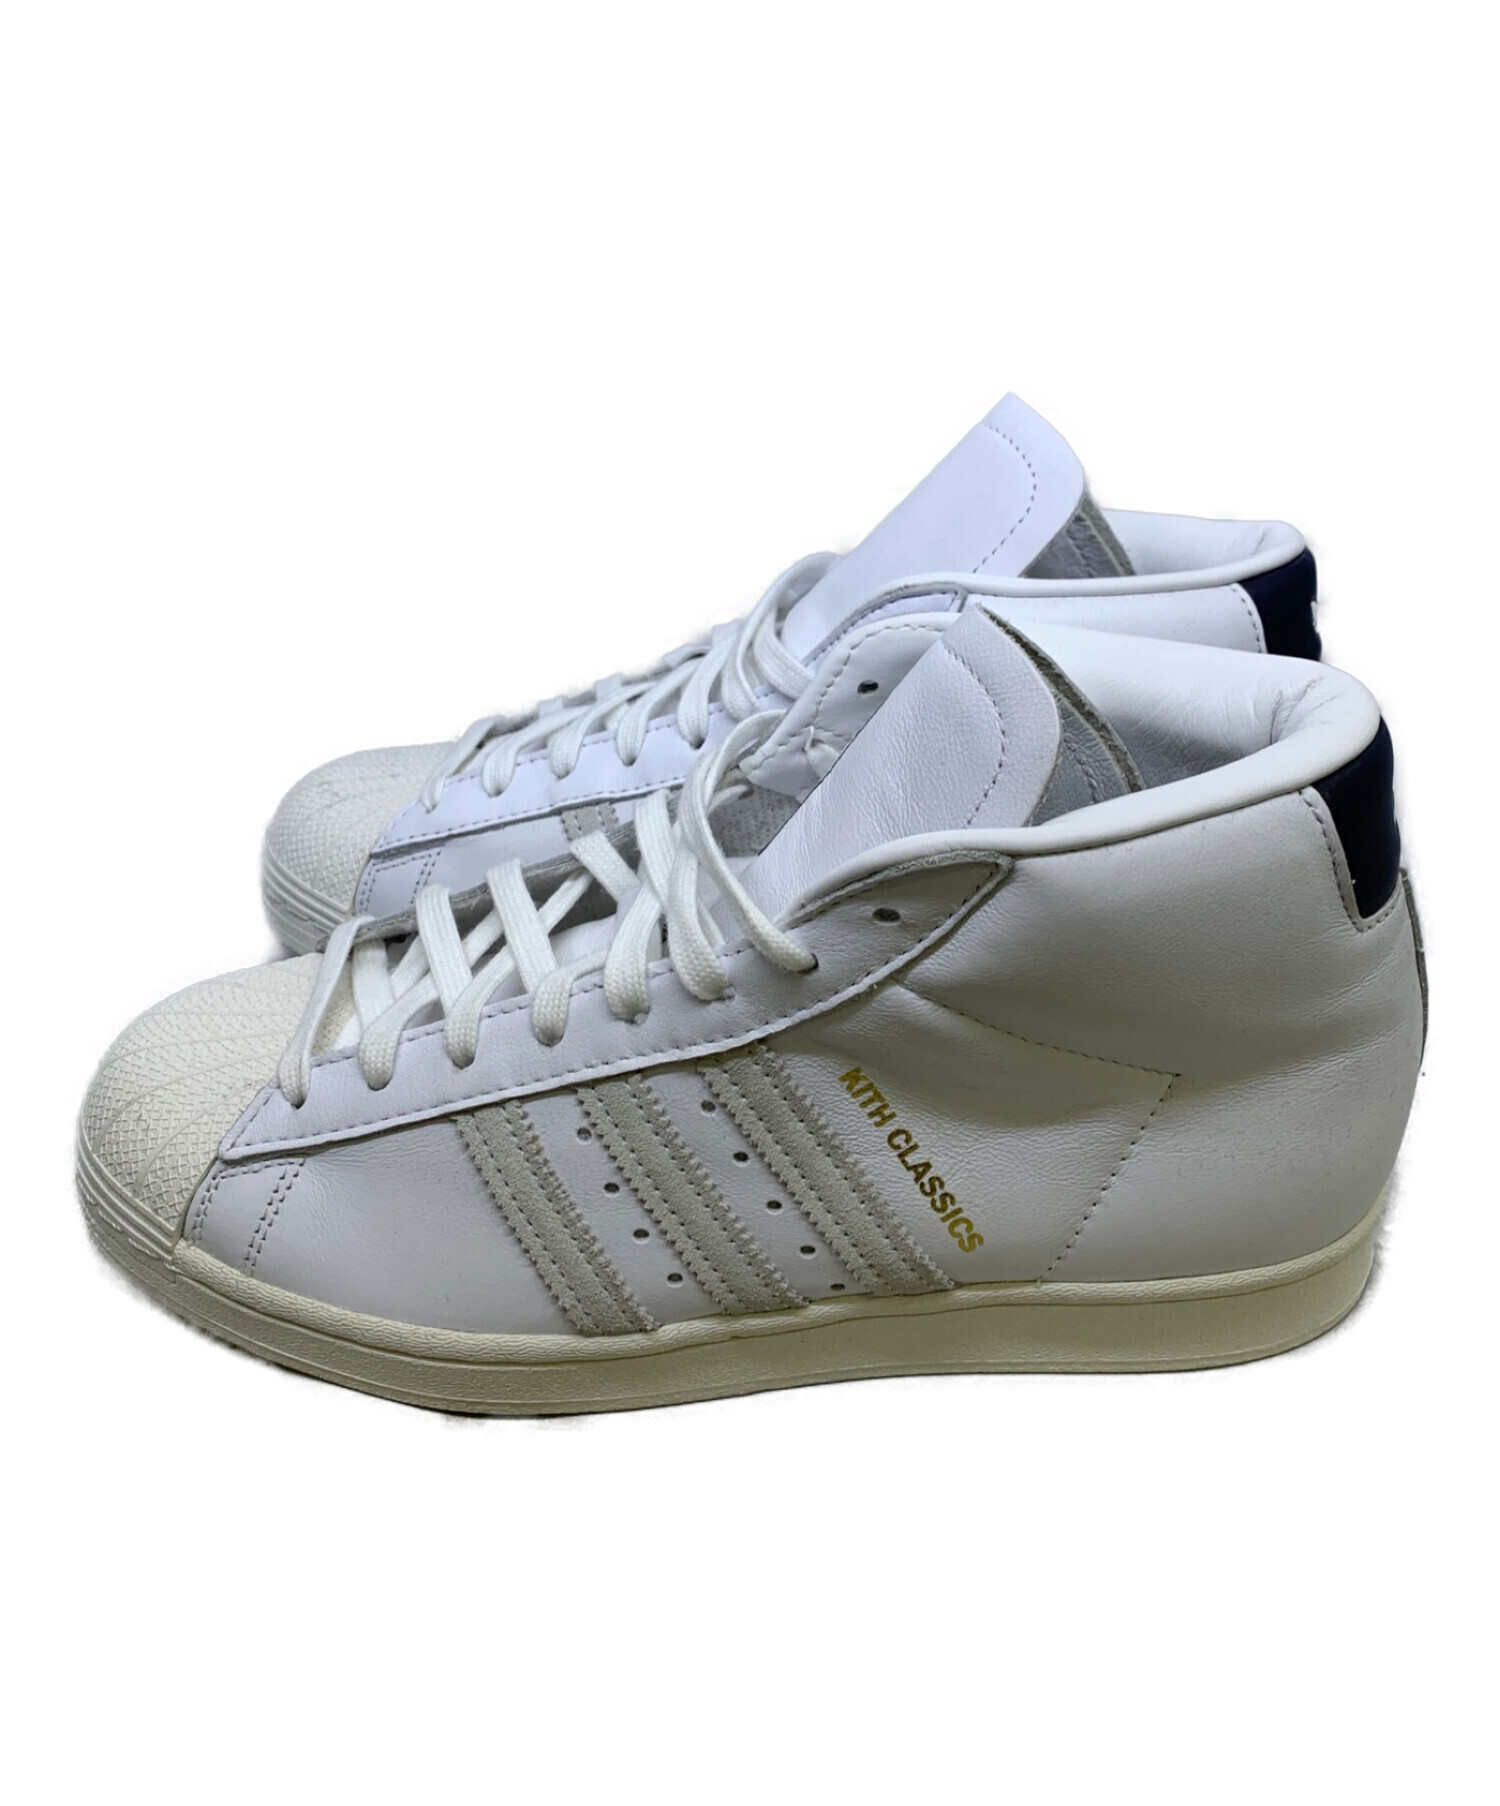 adidas (アディダス) KITH (キス) PRO MODEL ホワイト サイズ:26.5